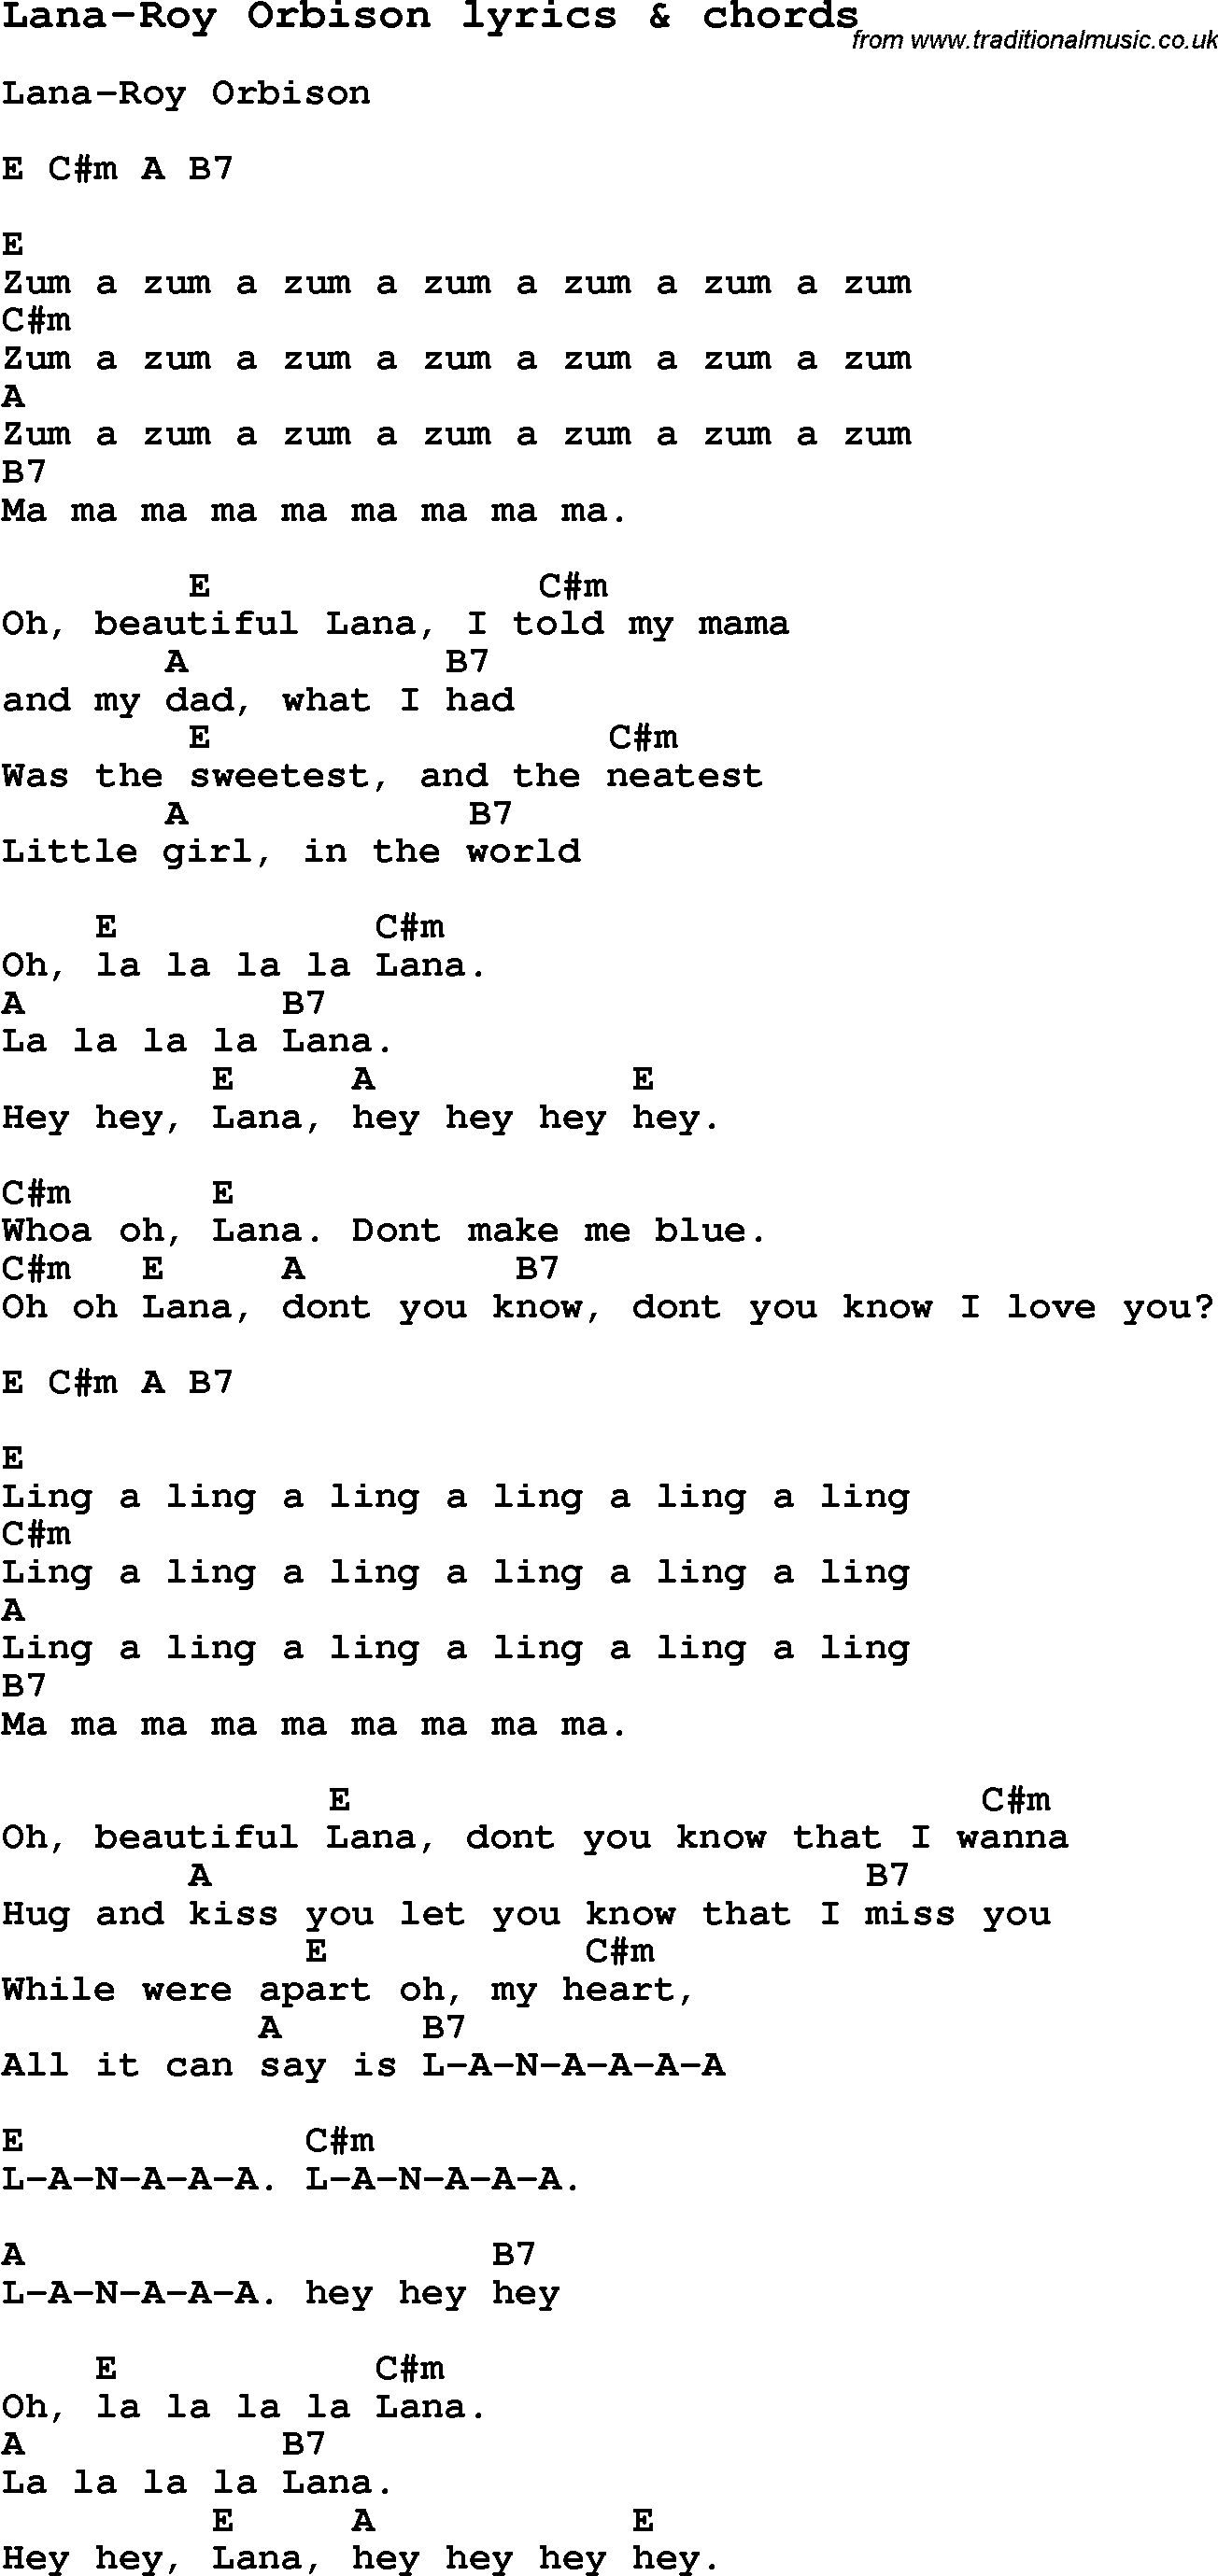 Love Song Lyrics for: Lana-Roy Orbison with chords for Ukulele, Guitar Banjo etc.